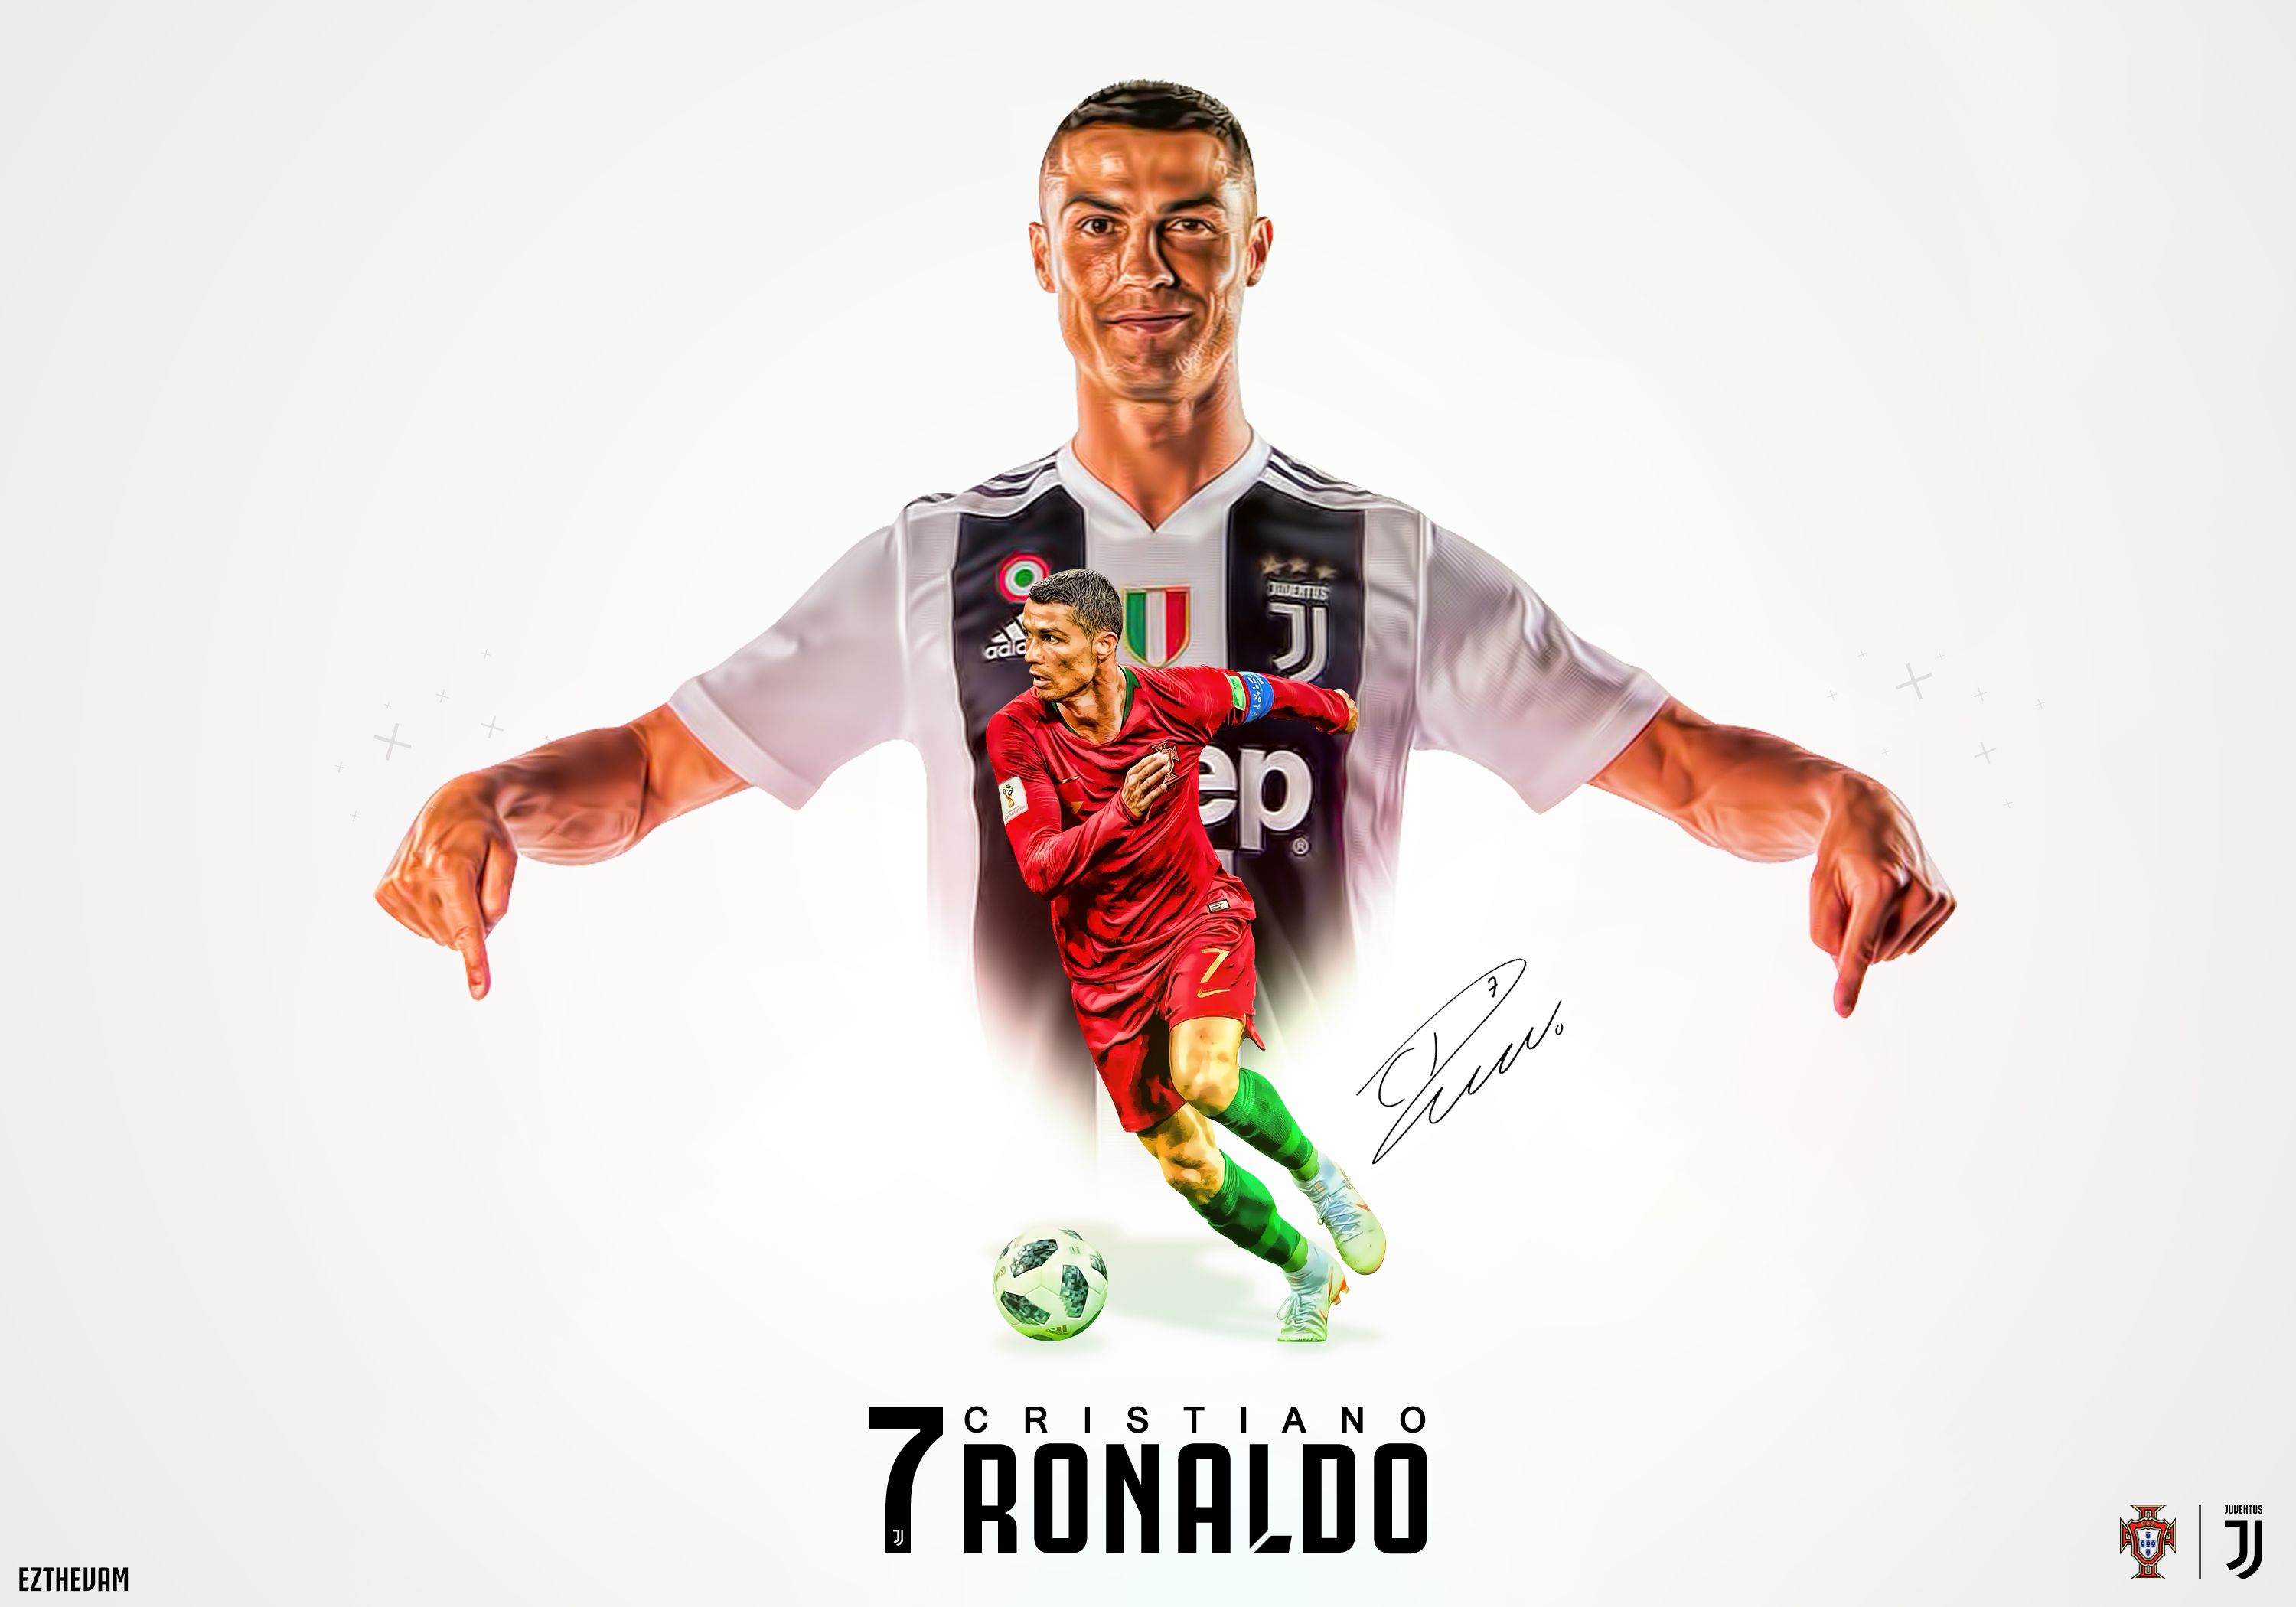  Cristiano Ronaldo Cellphone FHD pic